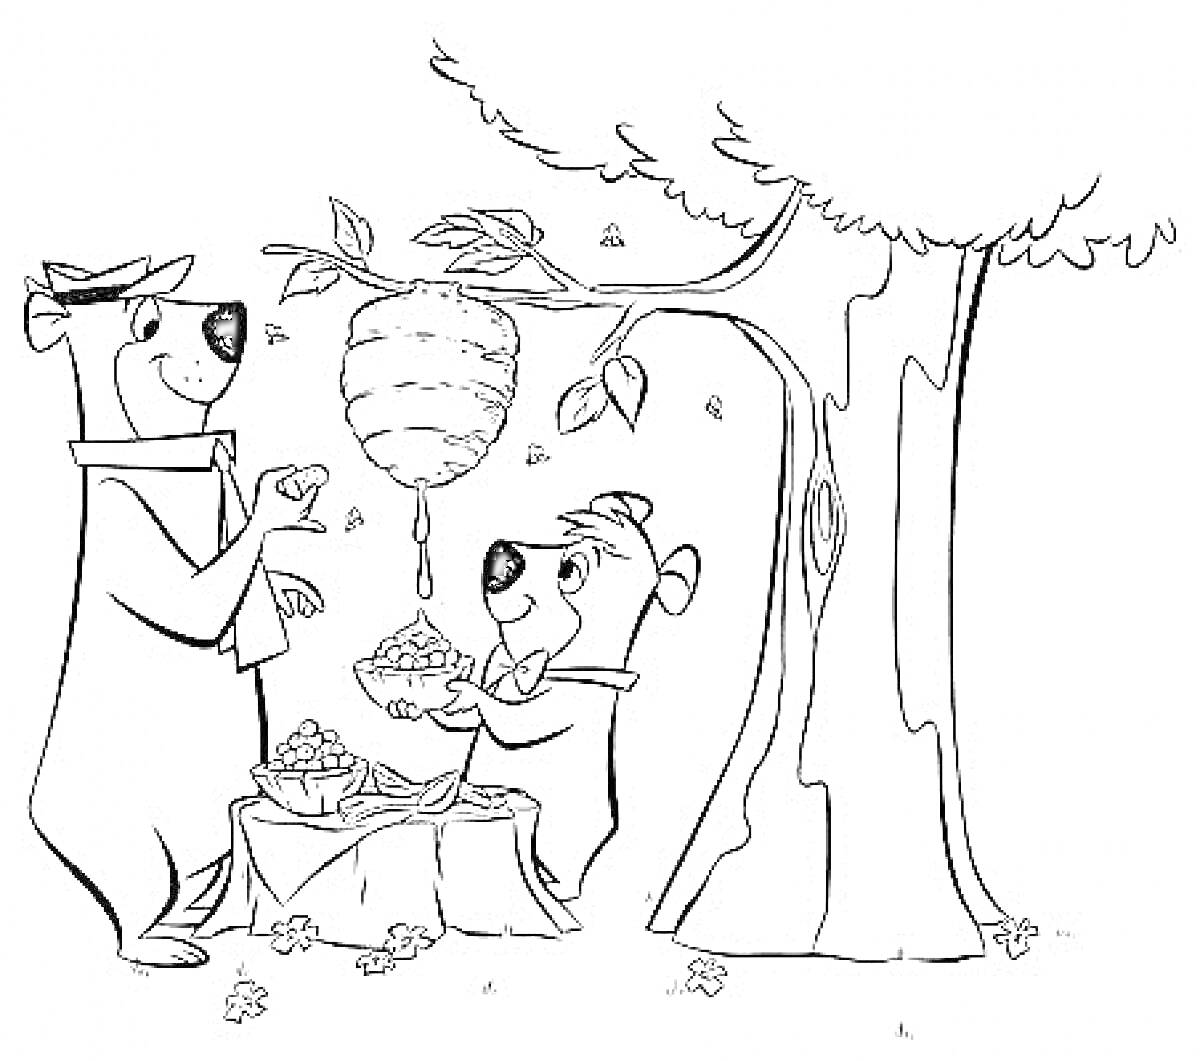 Медведь Йоги и Бу-Бу на пикнике под деревом с ульем